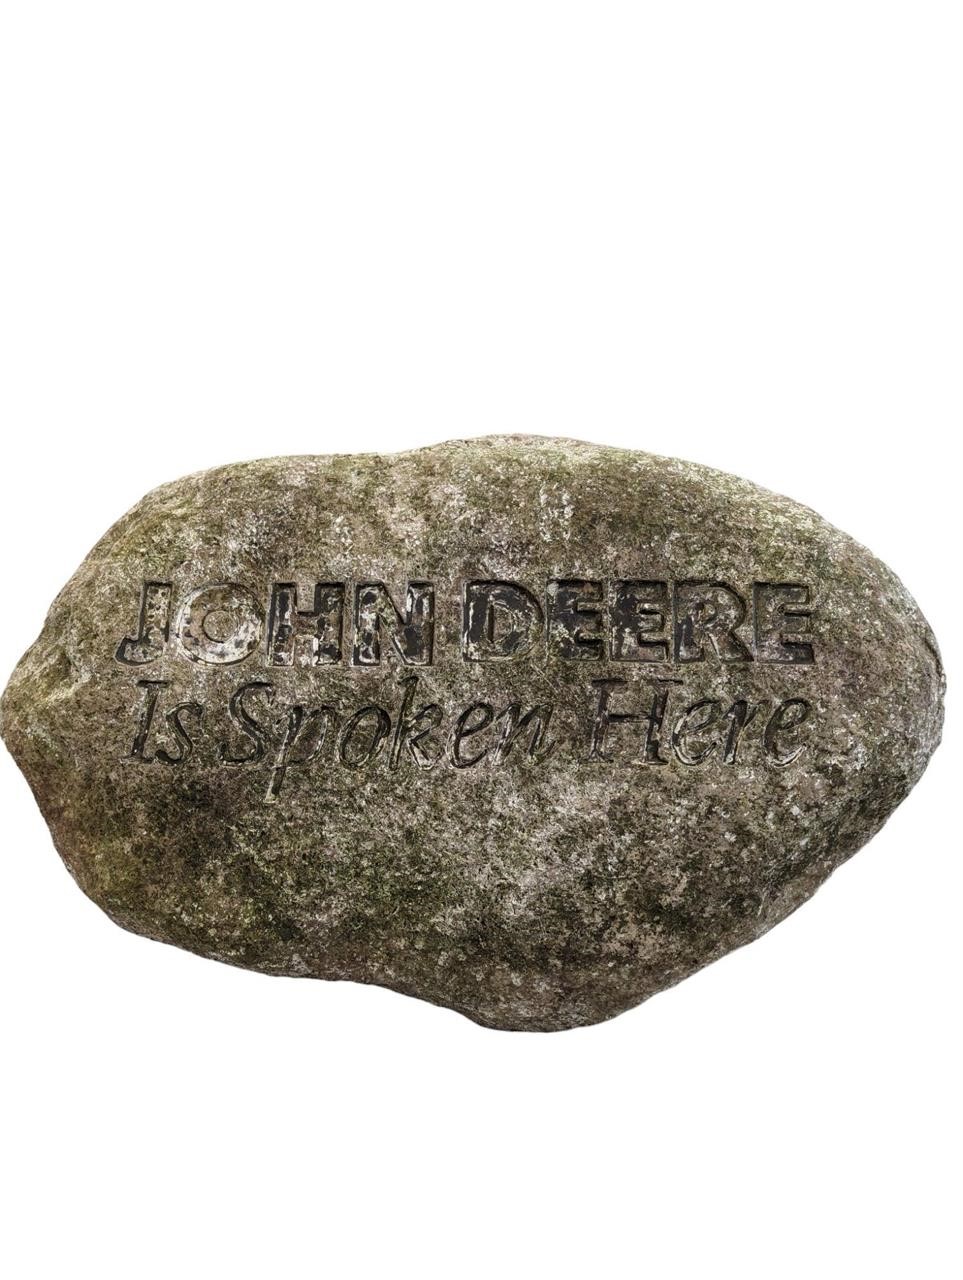 John Deere Lawn Stone